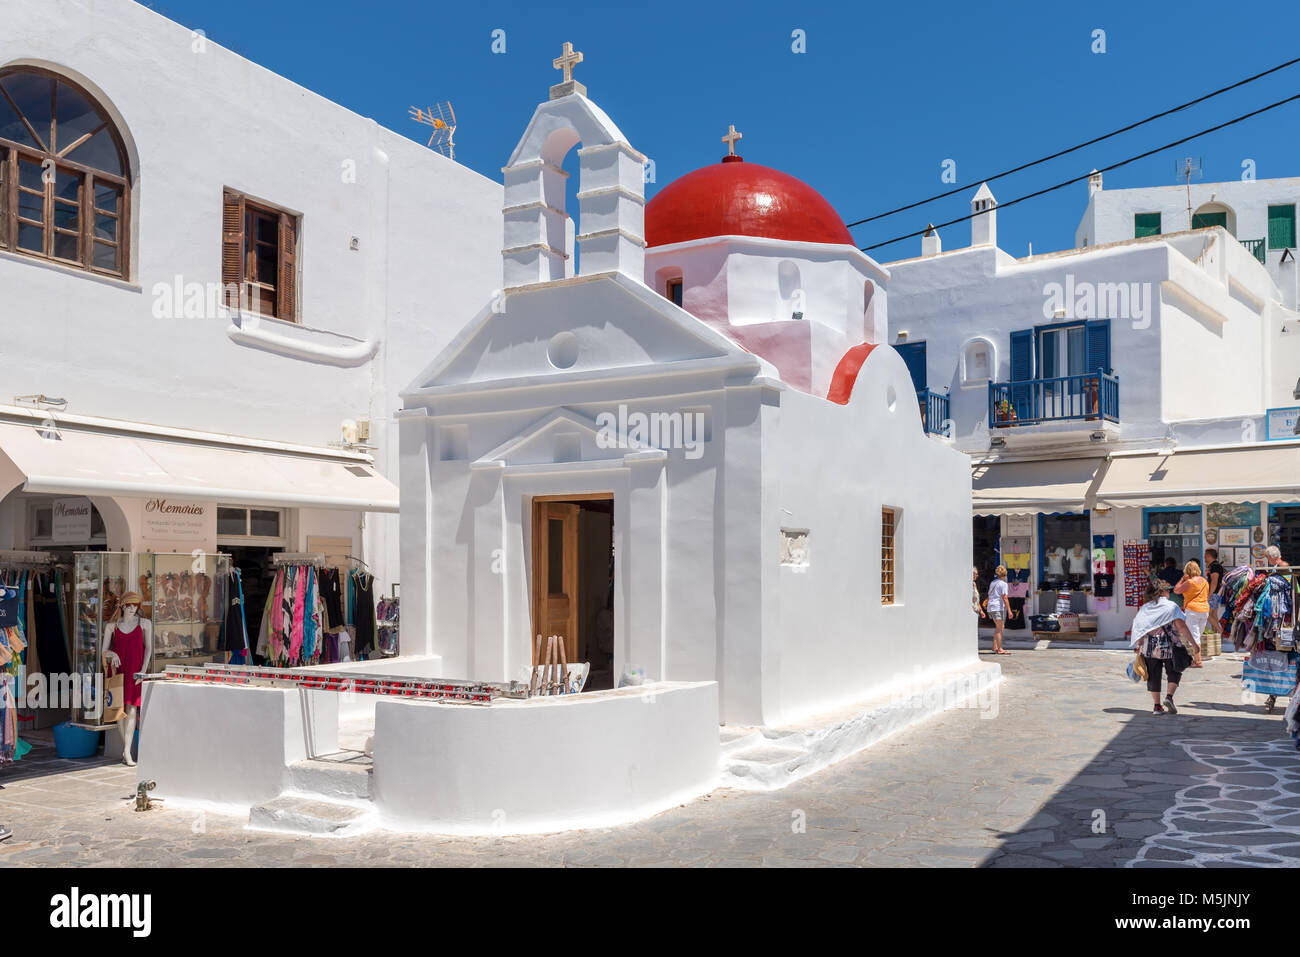 MYKONOS, GRÈCE - 23 mai 2017 : une vue de l'église grecque typique immeuble sur place avec des magasins dans la ville de Mykonos. Cyclades, Grèce Banque D'Images